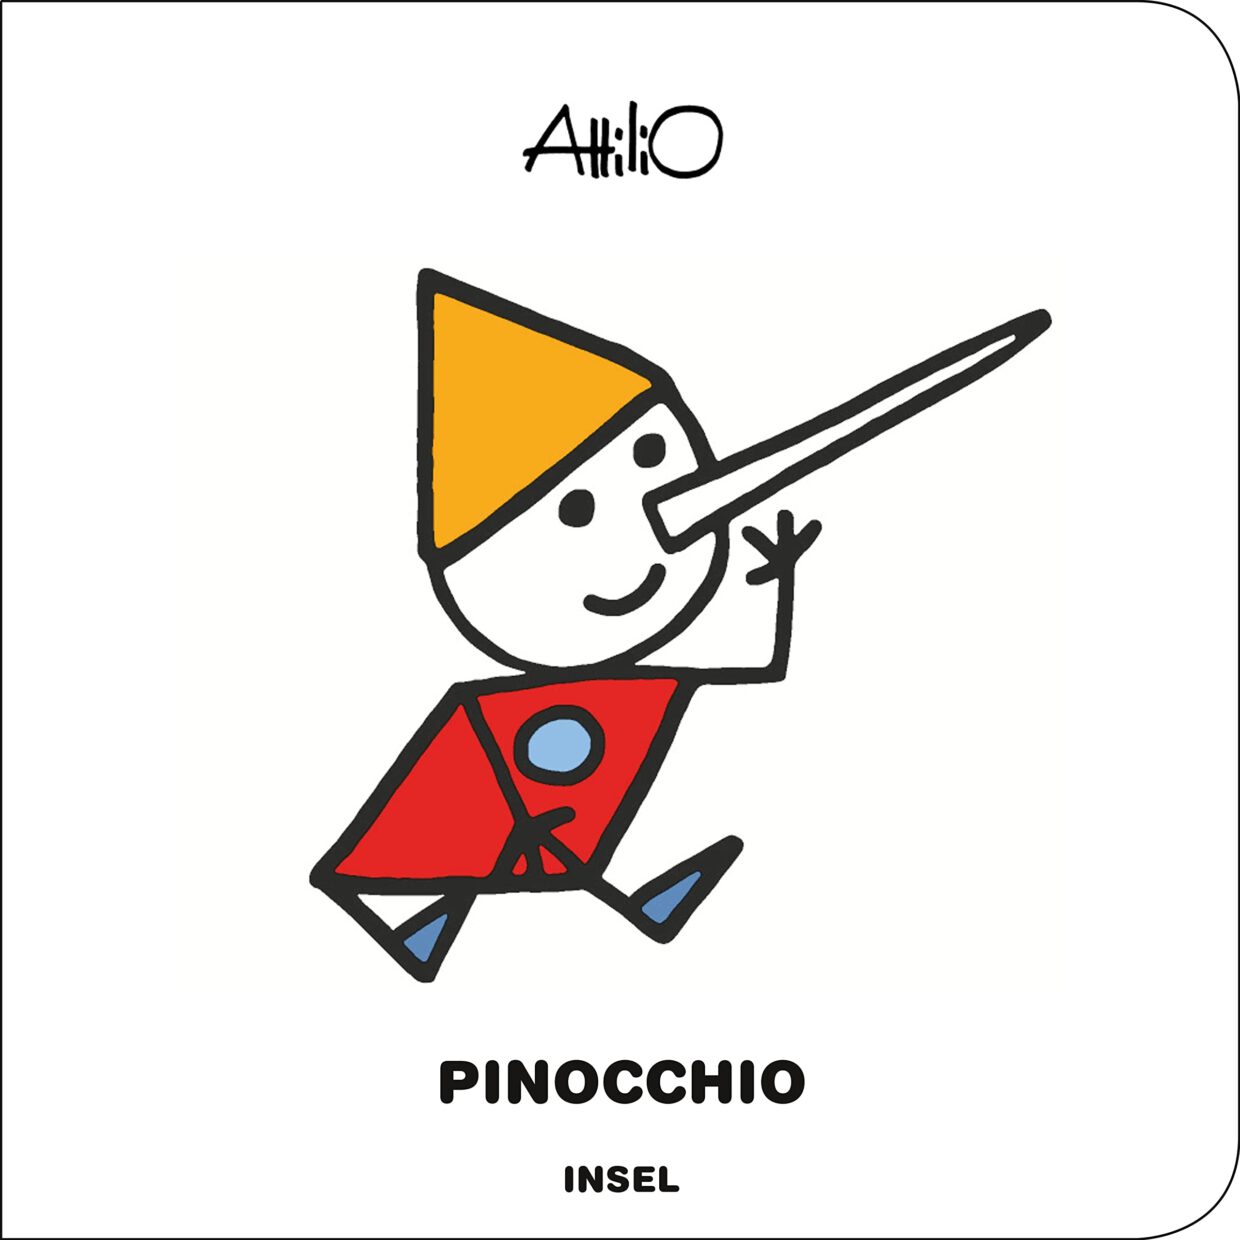 Attilio: Pinocchio